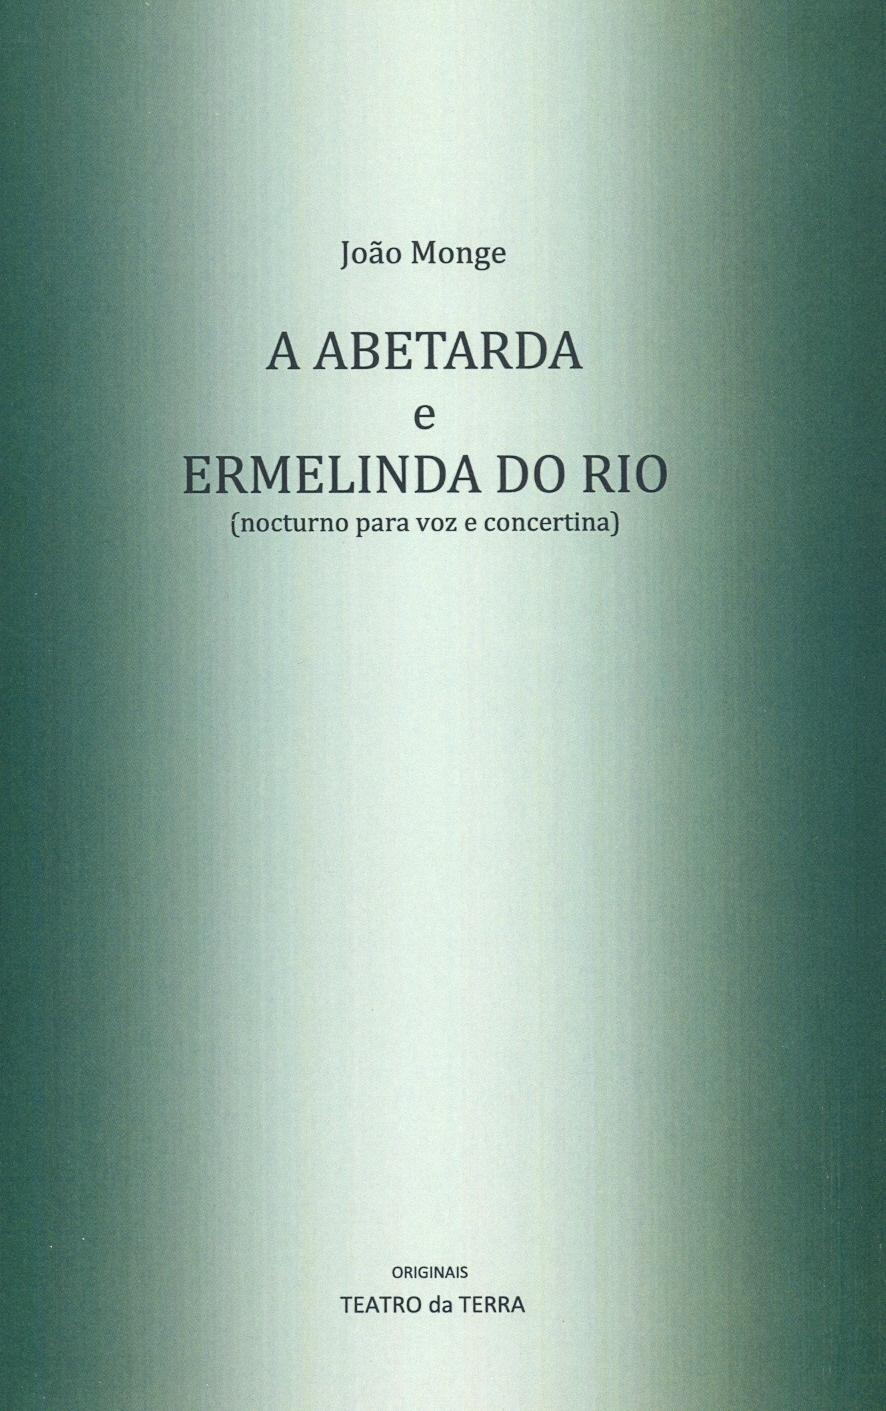 João Monge - A Abetarda e Ermelinda do Rio